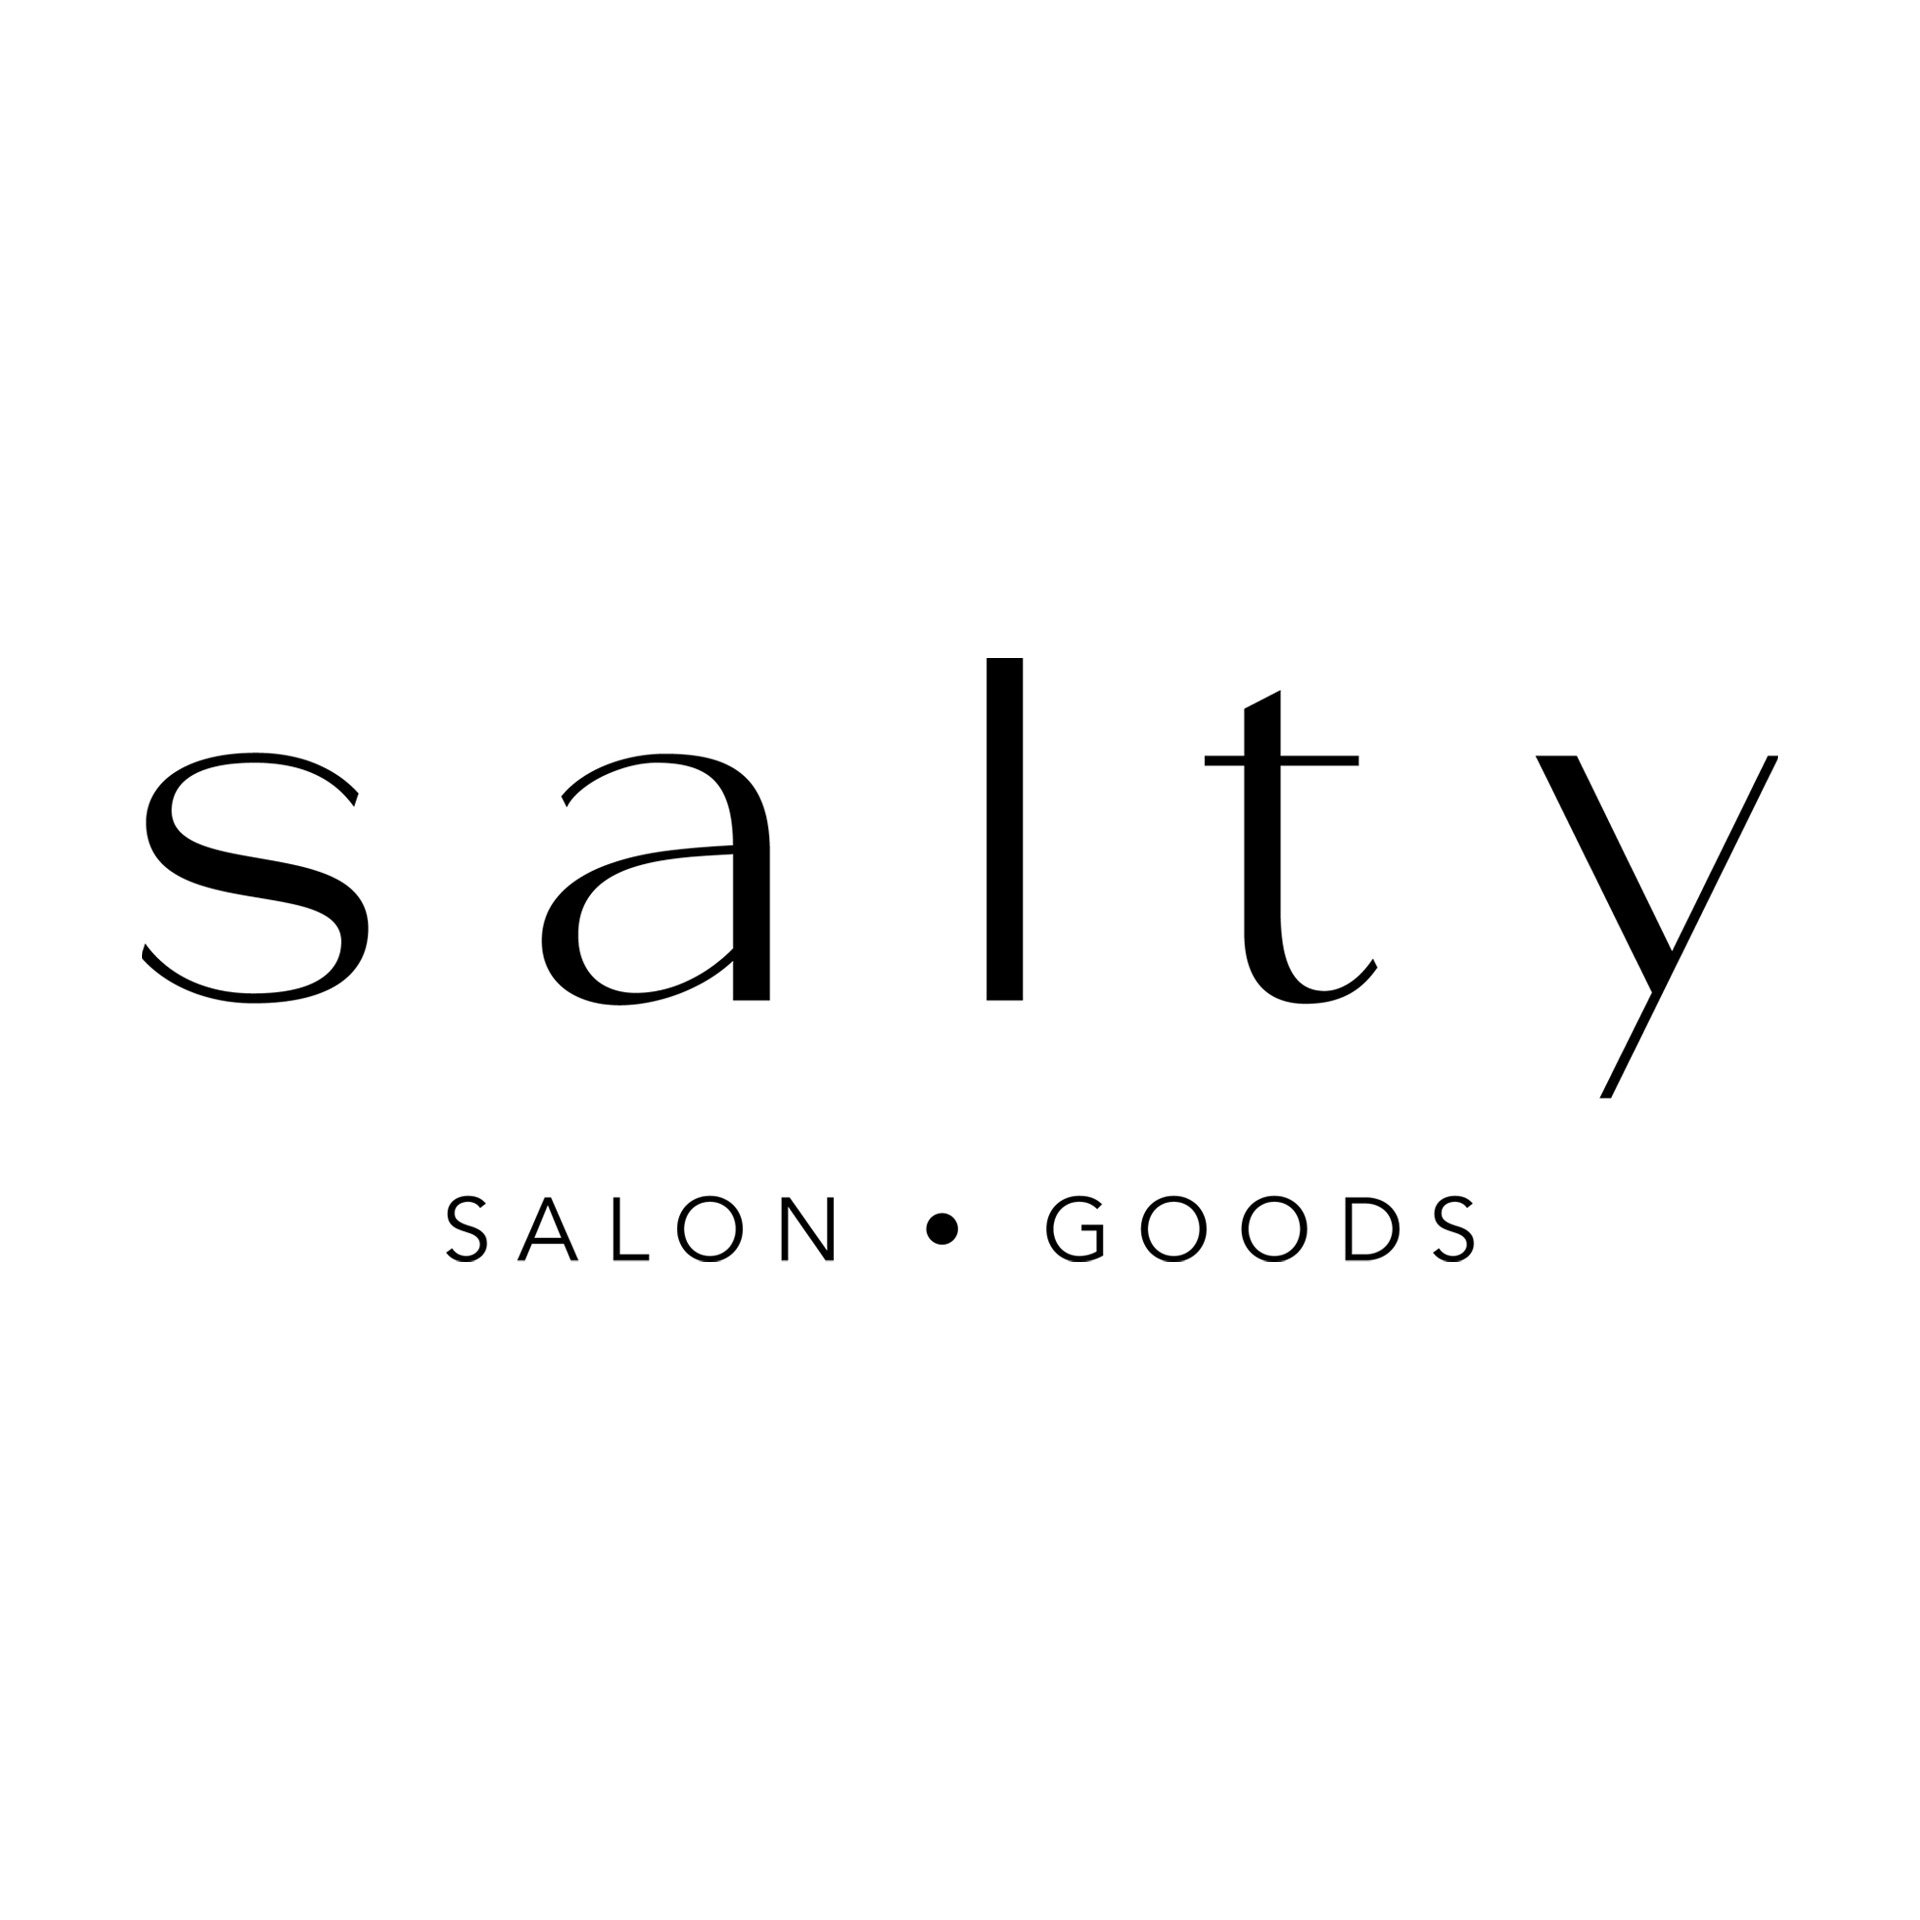 S A L T Y   Salon • Goods